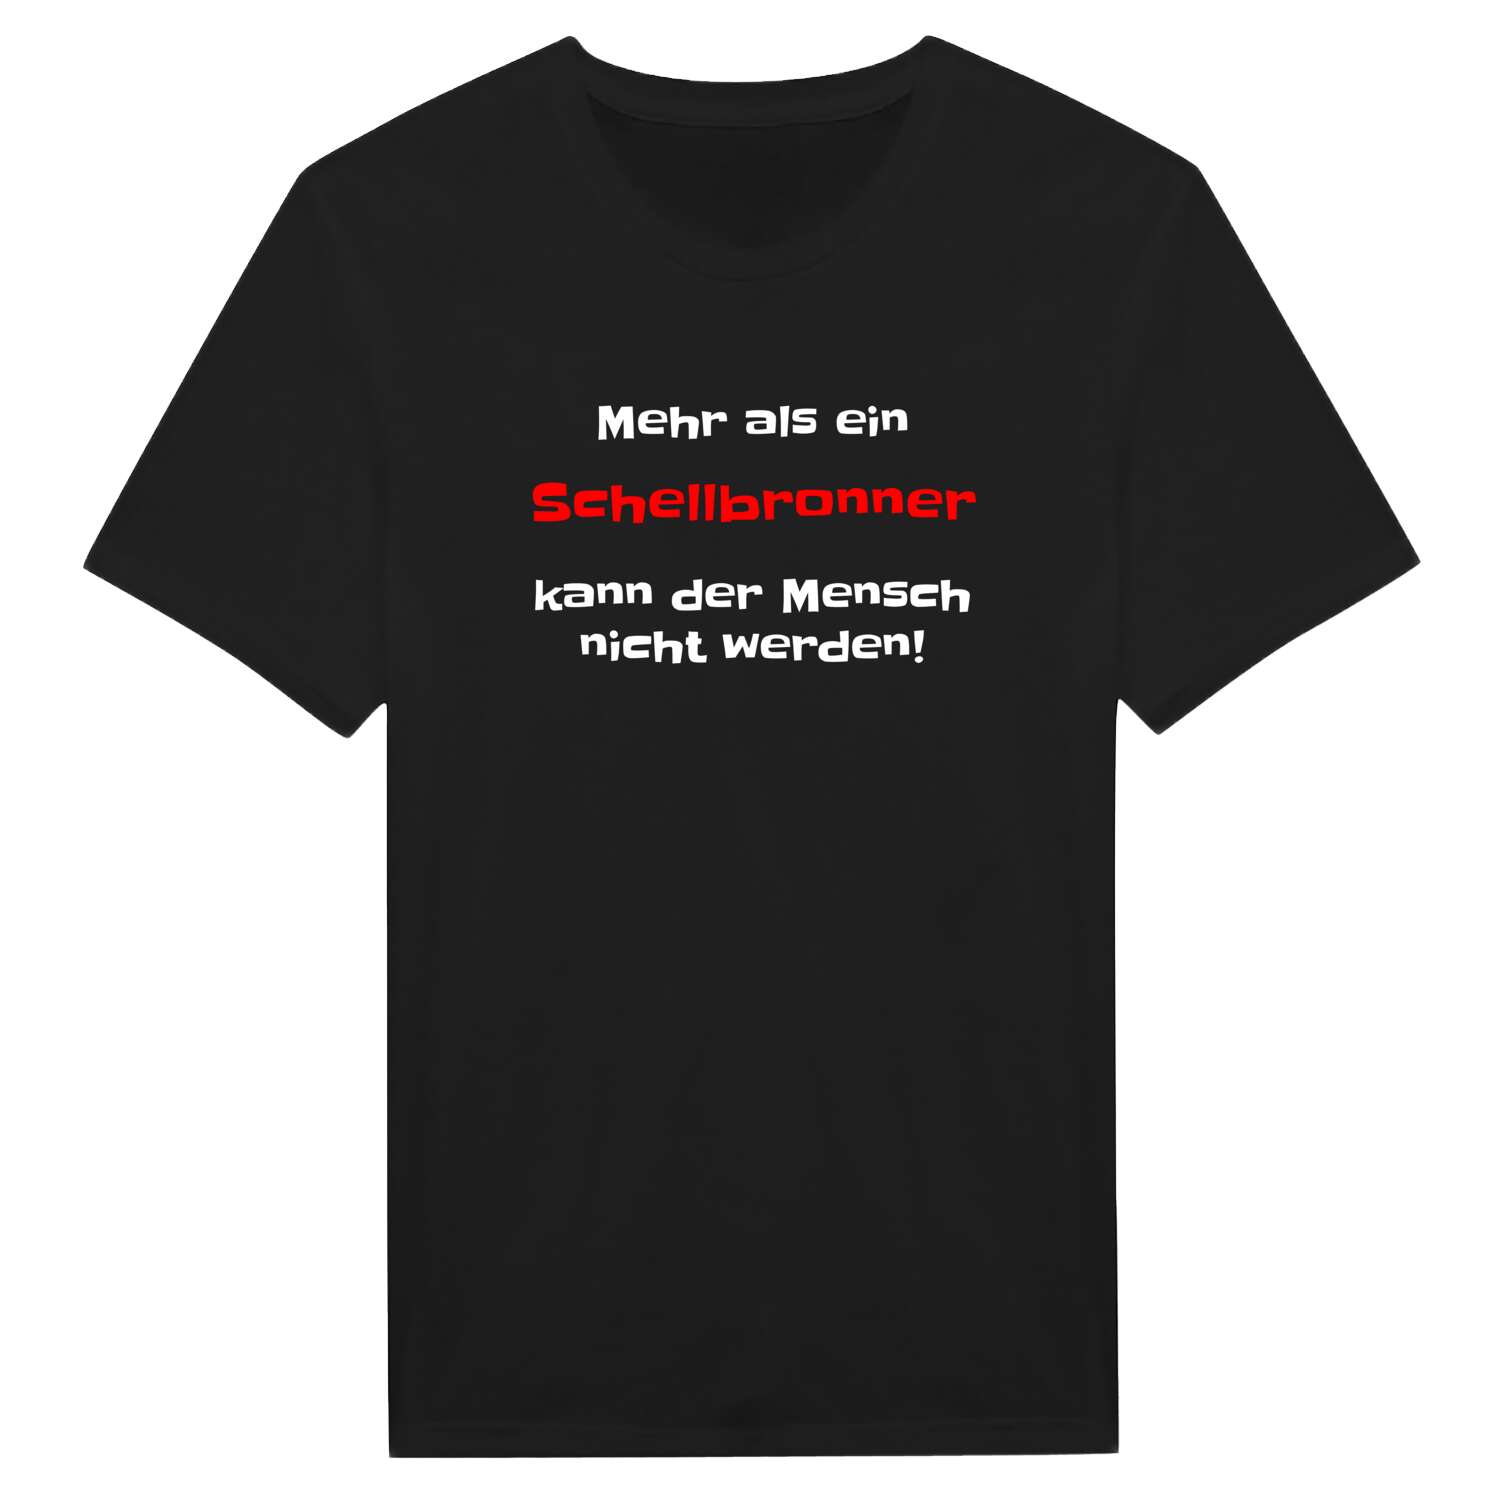 Schellbronn T-Shirt »Mehr als ein«